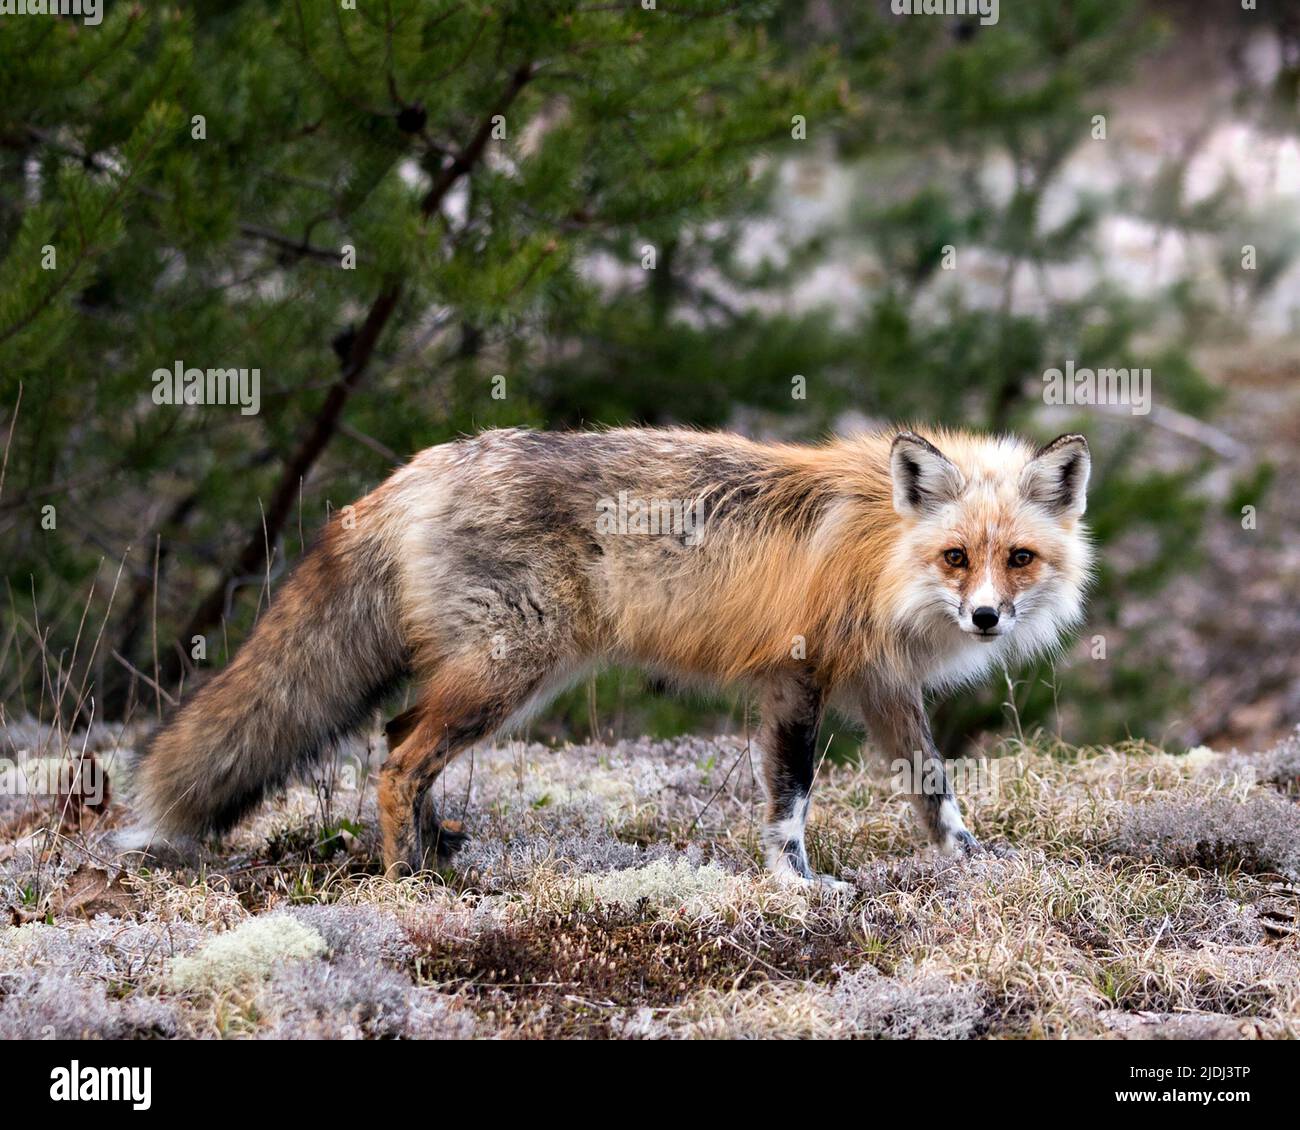 Vista laterale del profilo della volpe rossa in primo piano guardando la telecamera con uno sfondo di foresta sfocata nel suo ambiente e habitat. Immagine Fox. Immagine. Verticale. Foto Stock